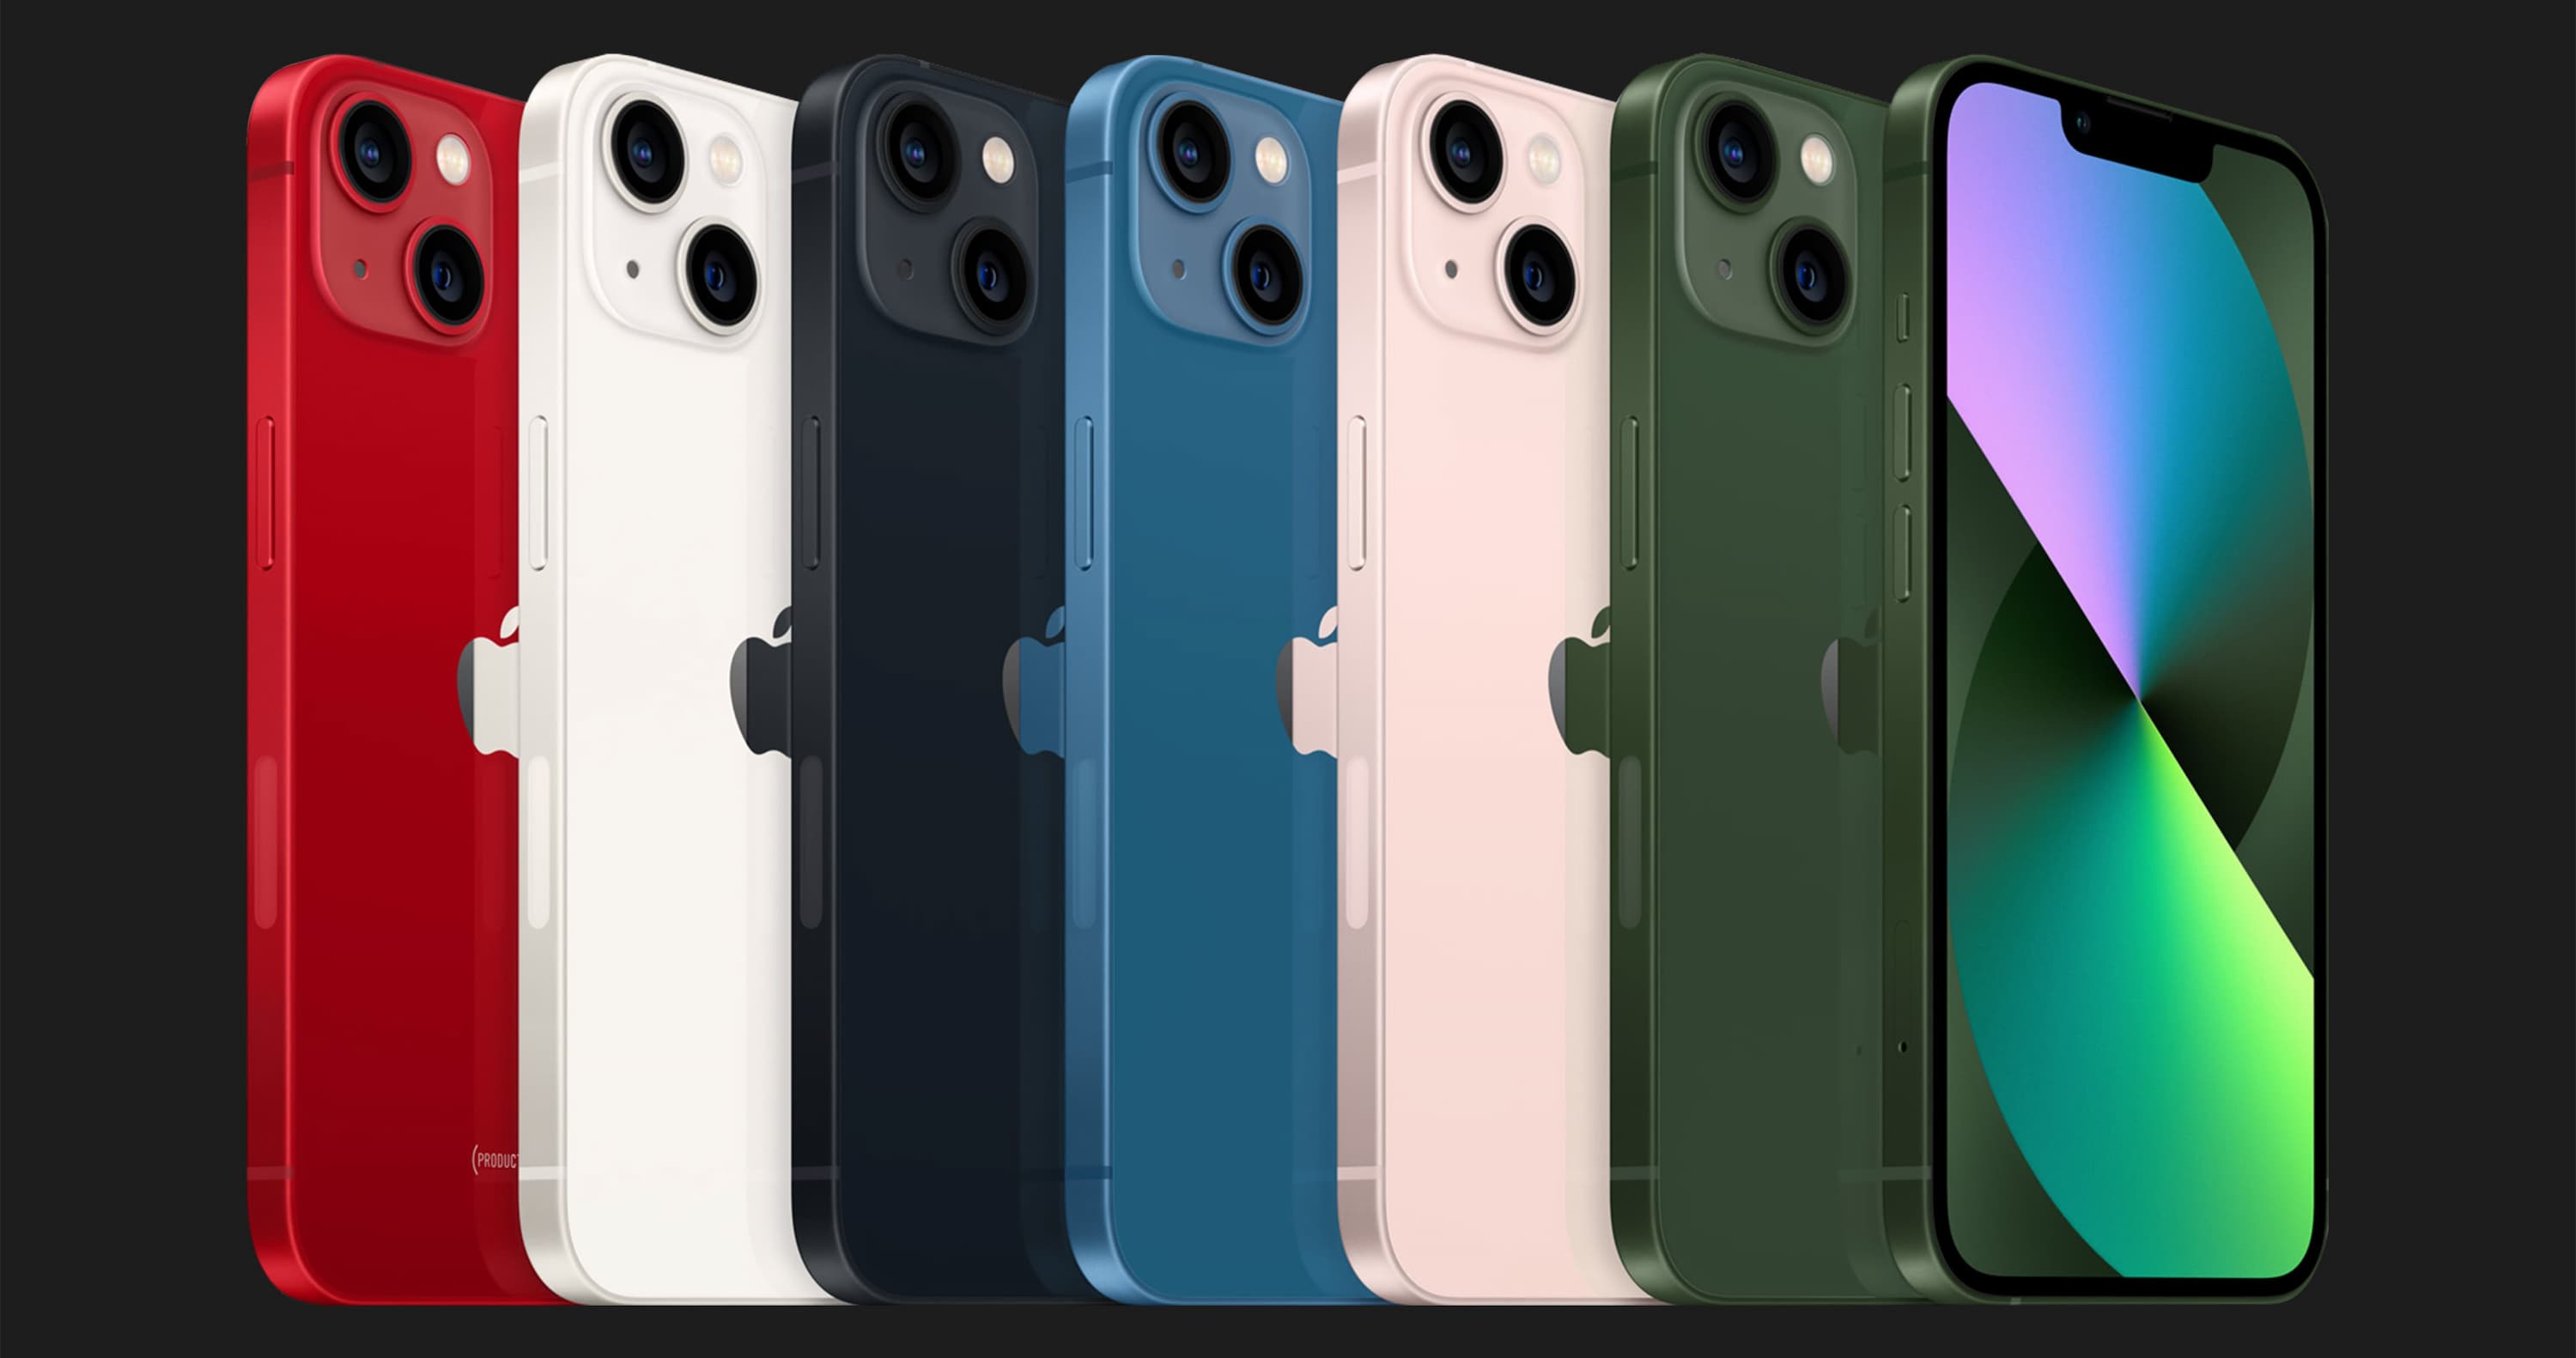 Купить Apple iPhone 13 128GB (Green) — цены ⚡, отзывы ⚡, характеристики —  ЯБКО